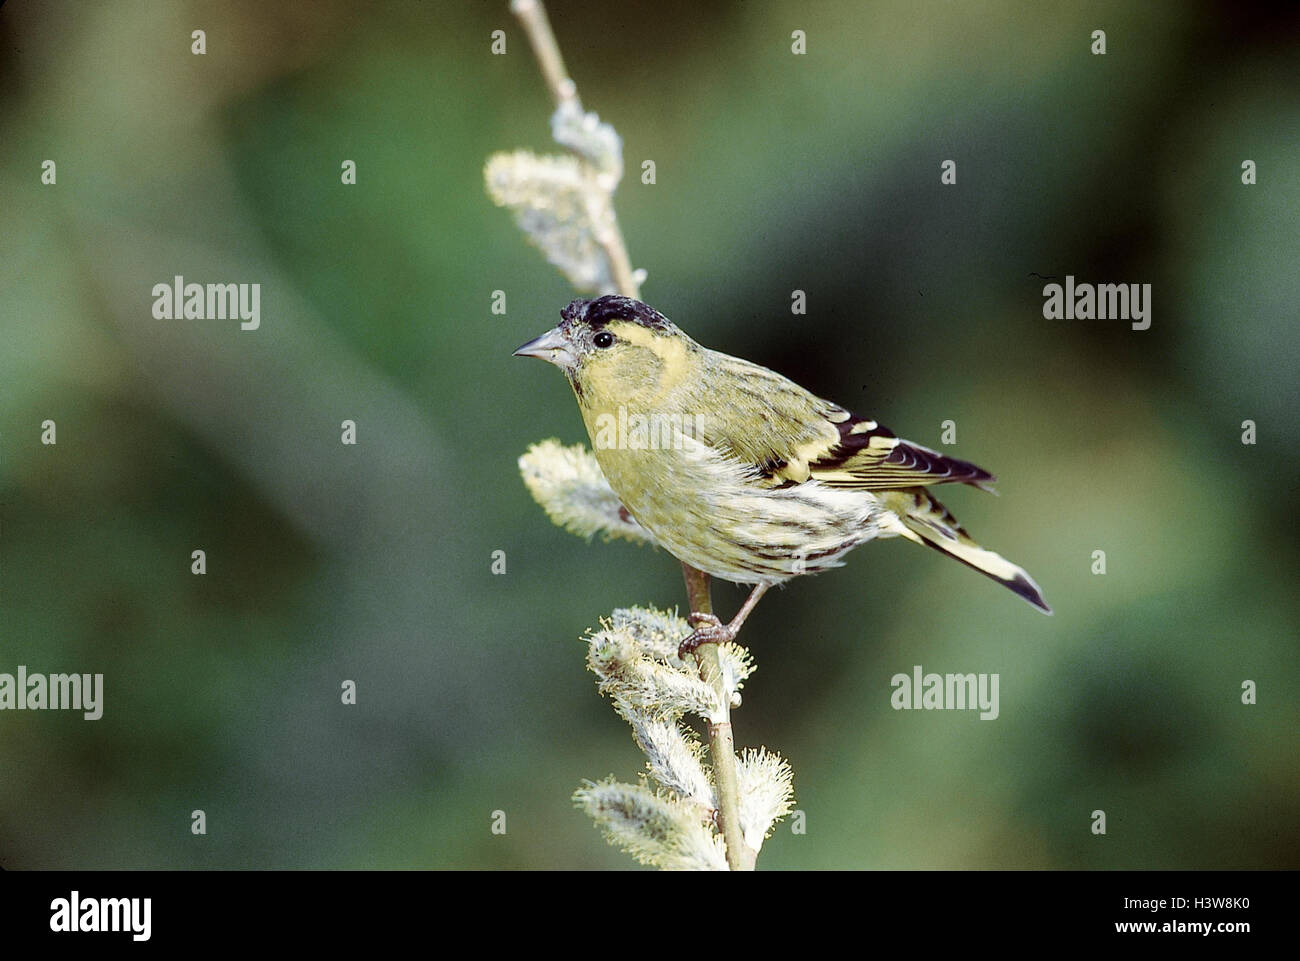 Erlenzeisig, Carduelis spinus, branch, outside, songbirds, songbird, finch, birds, bird, Zeisige, Zeisig Stock Photo